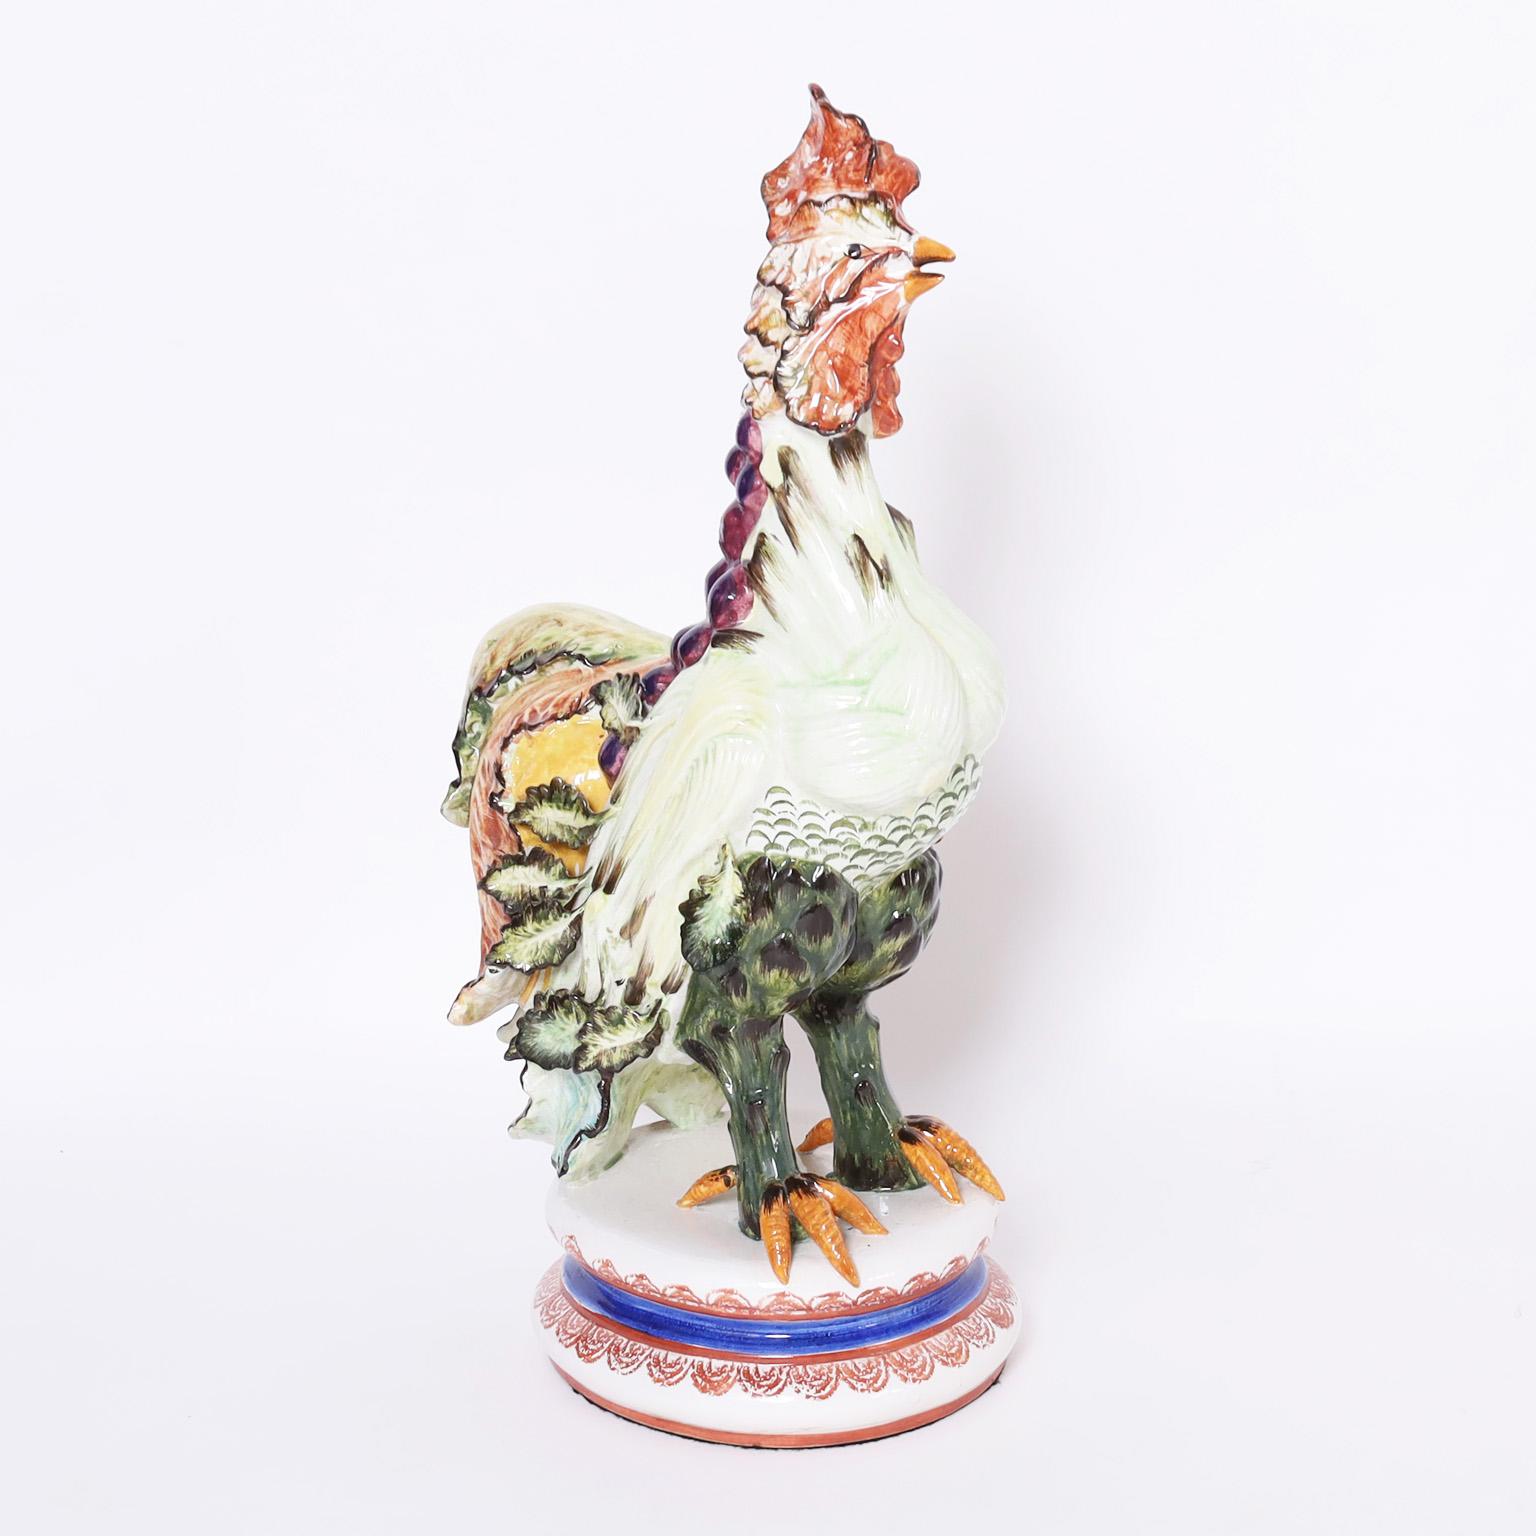 Grand objet d'art italien fantaisiste du milieu du siècle, en porcelaine, représentant un coq avec des parties végétales. Signé indistinctement en bas.